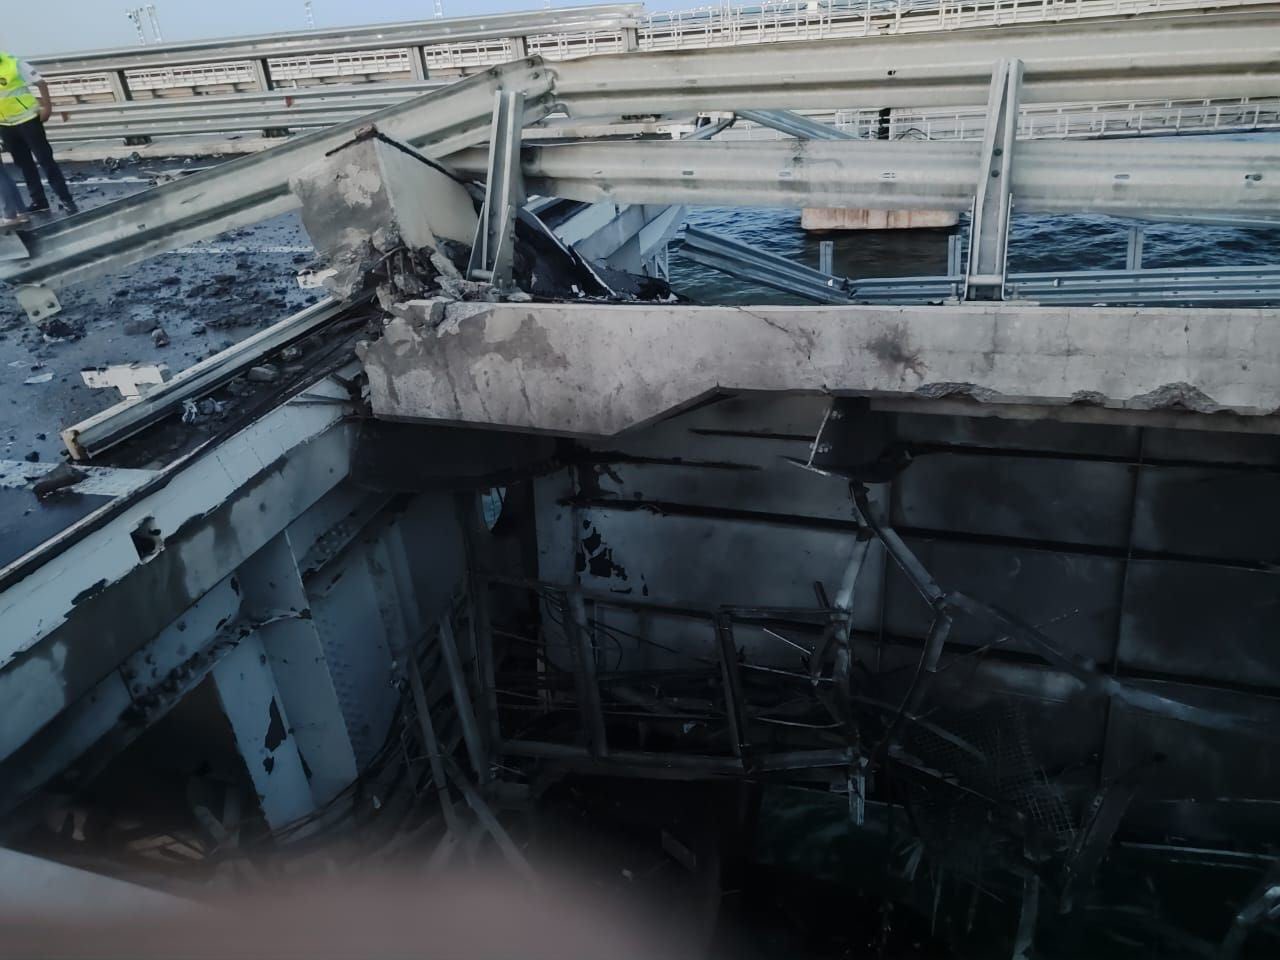 Επίθεση στη γέφυρα της Κριμαίας: «Ήταν ειδική επιχείρηση με drones των ουκρανικών υπηρεσιών» - Ανάμειξη Βρετανίας και ΗΠΑ «βλέπει» η Ζαχάροβα